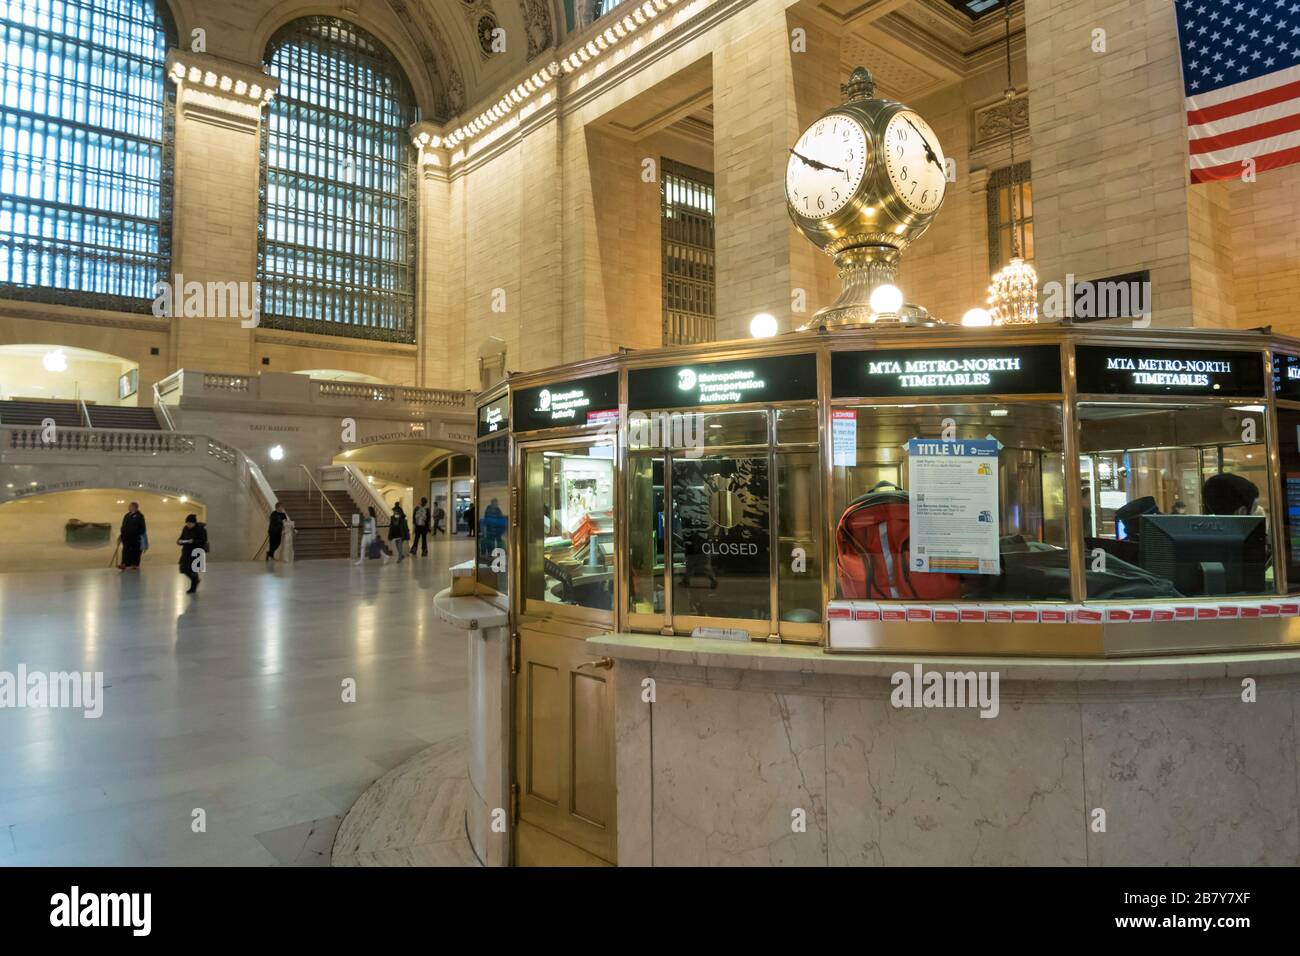 Grand Central est presque vide en raison de la pandémie COVID-19, mars 2020, New York City, États-Unis Banque D'Images